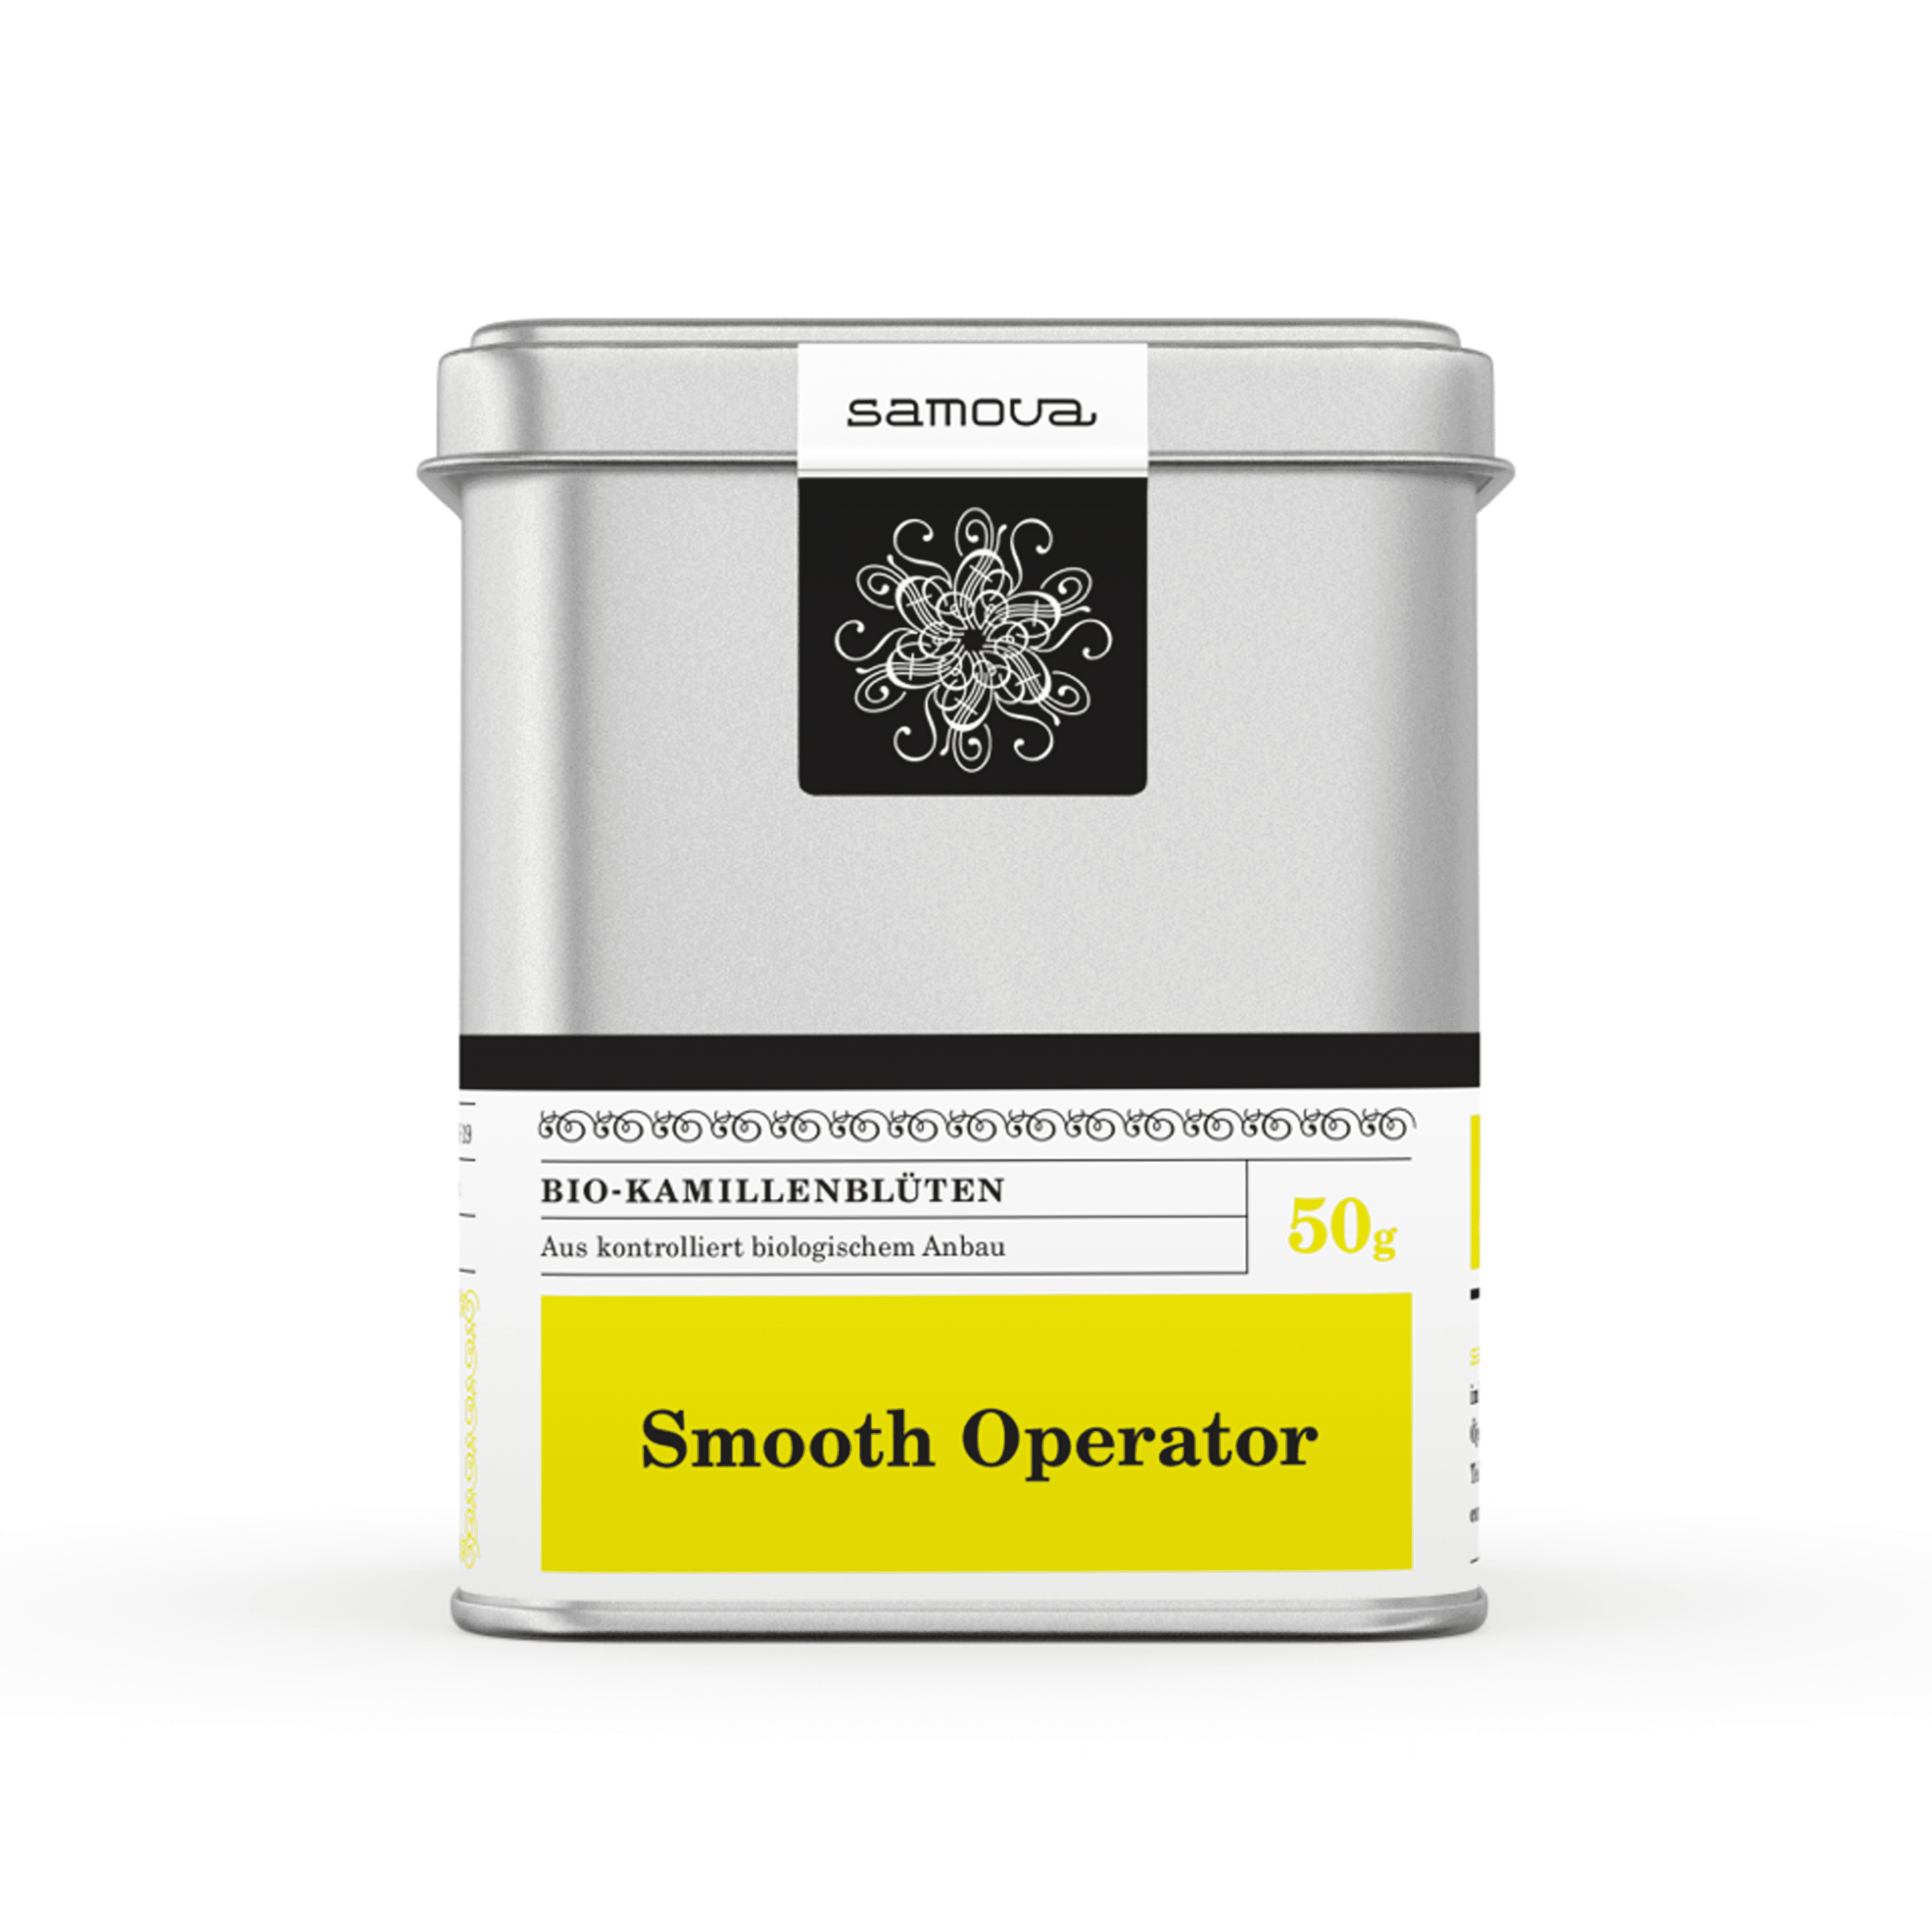 Dåse med Smooth Operator te